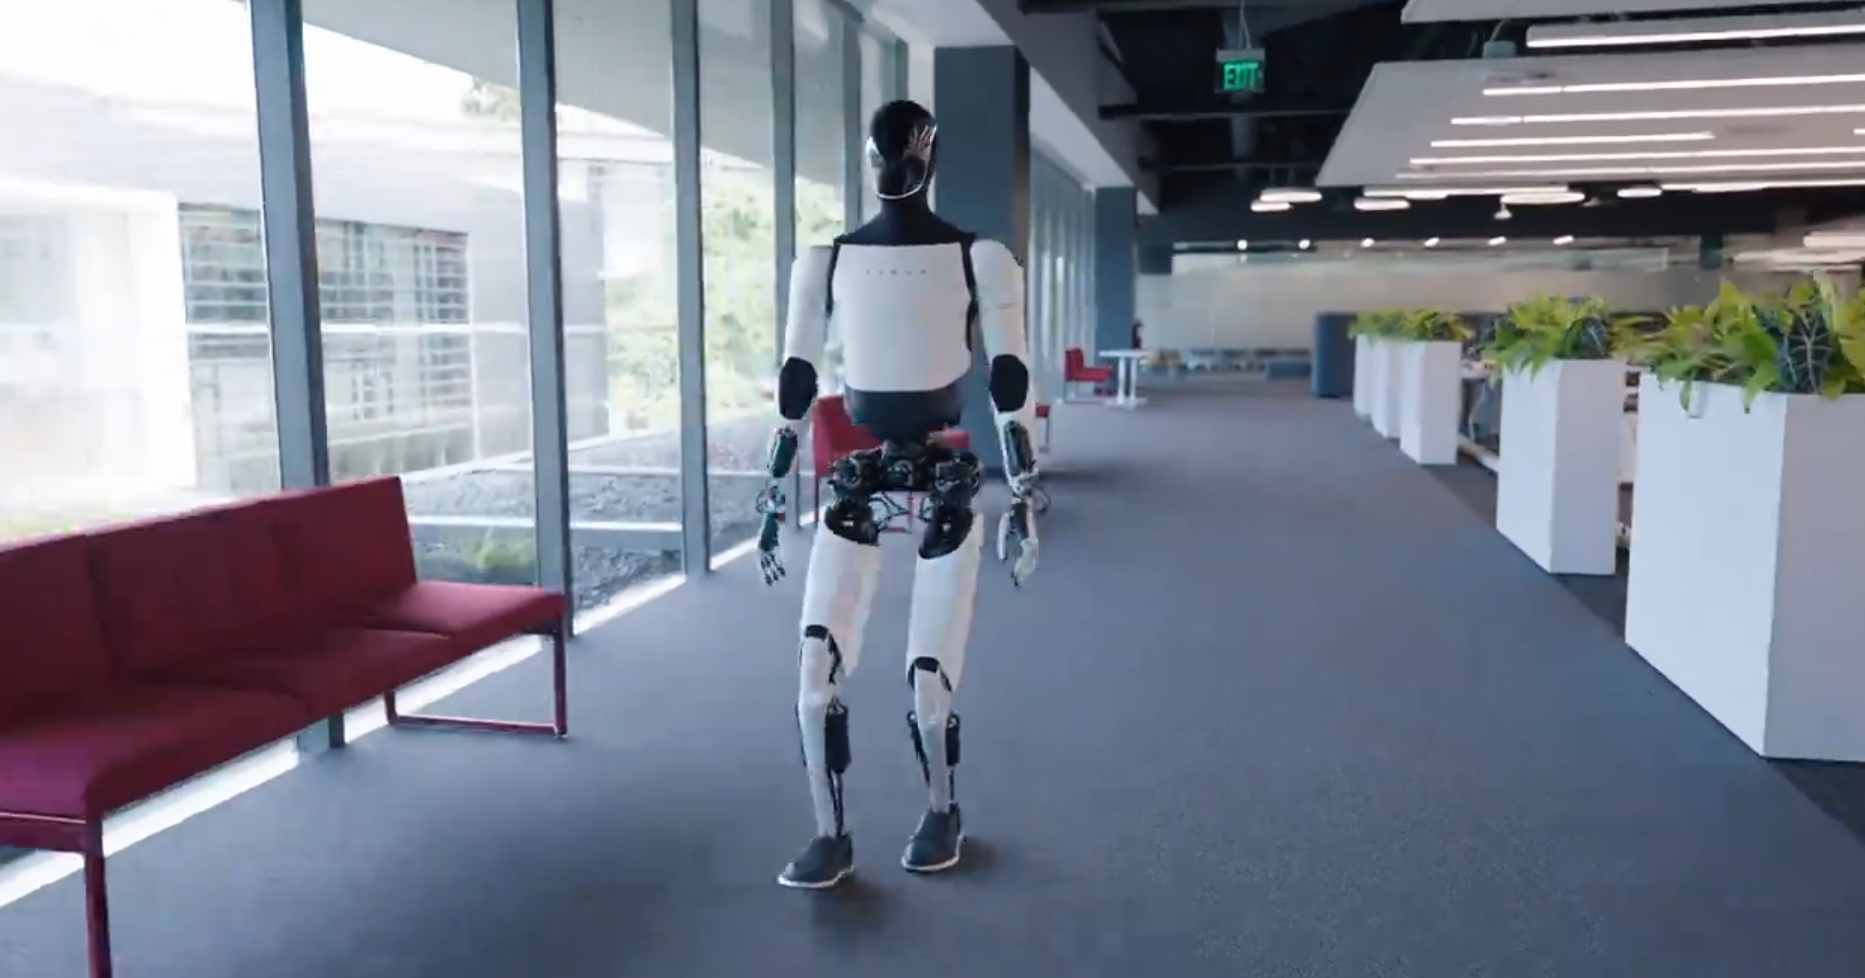 neues video von tesla-roboter optimus sorgt für kontroversen